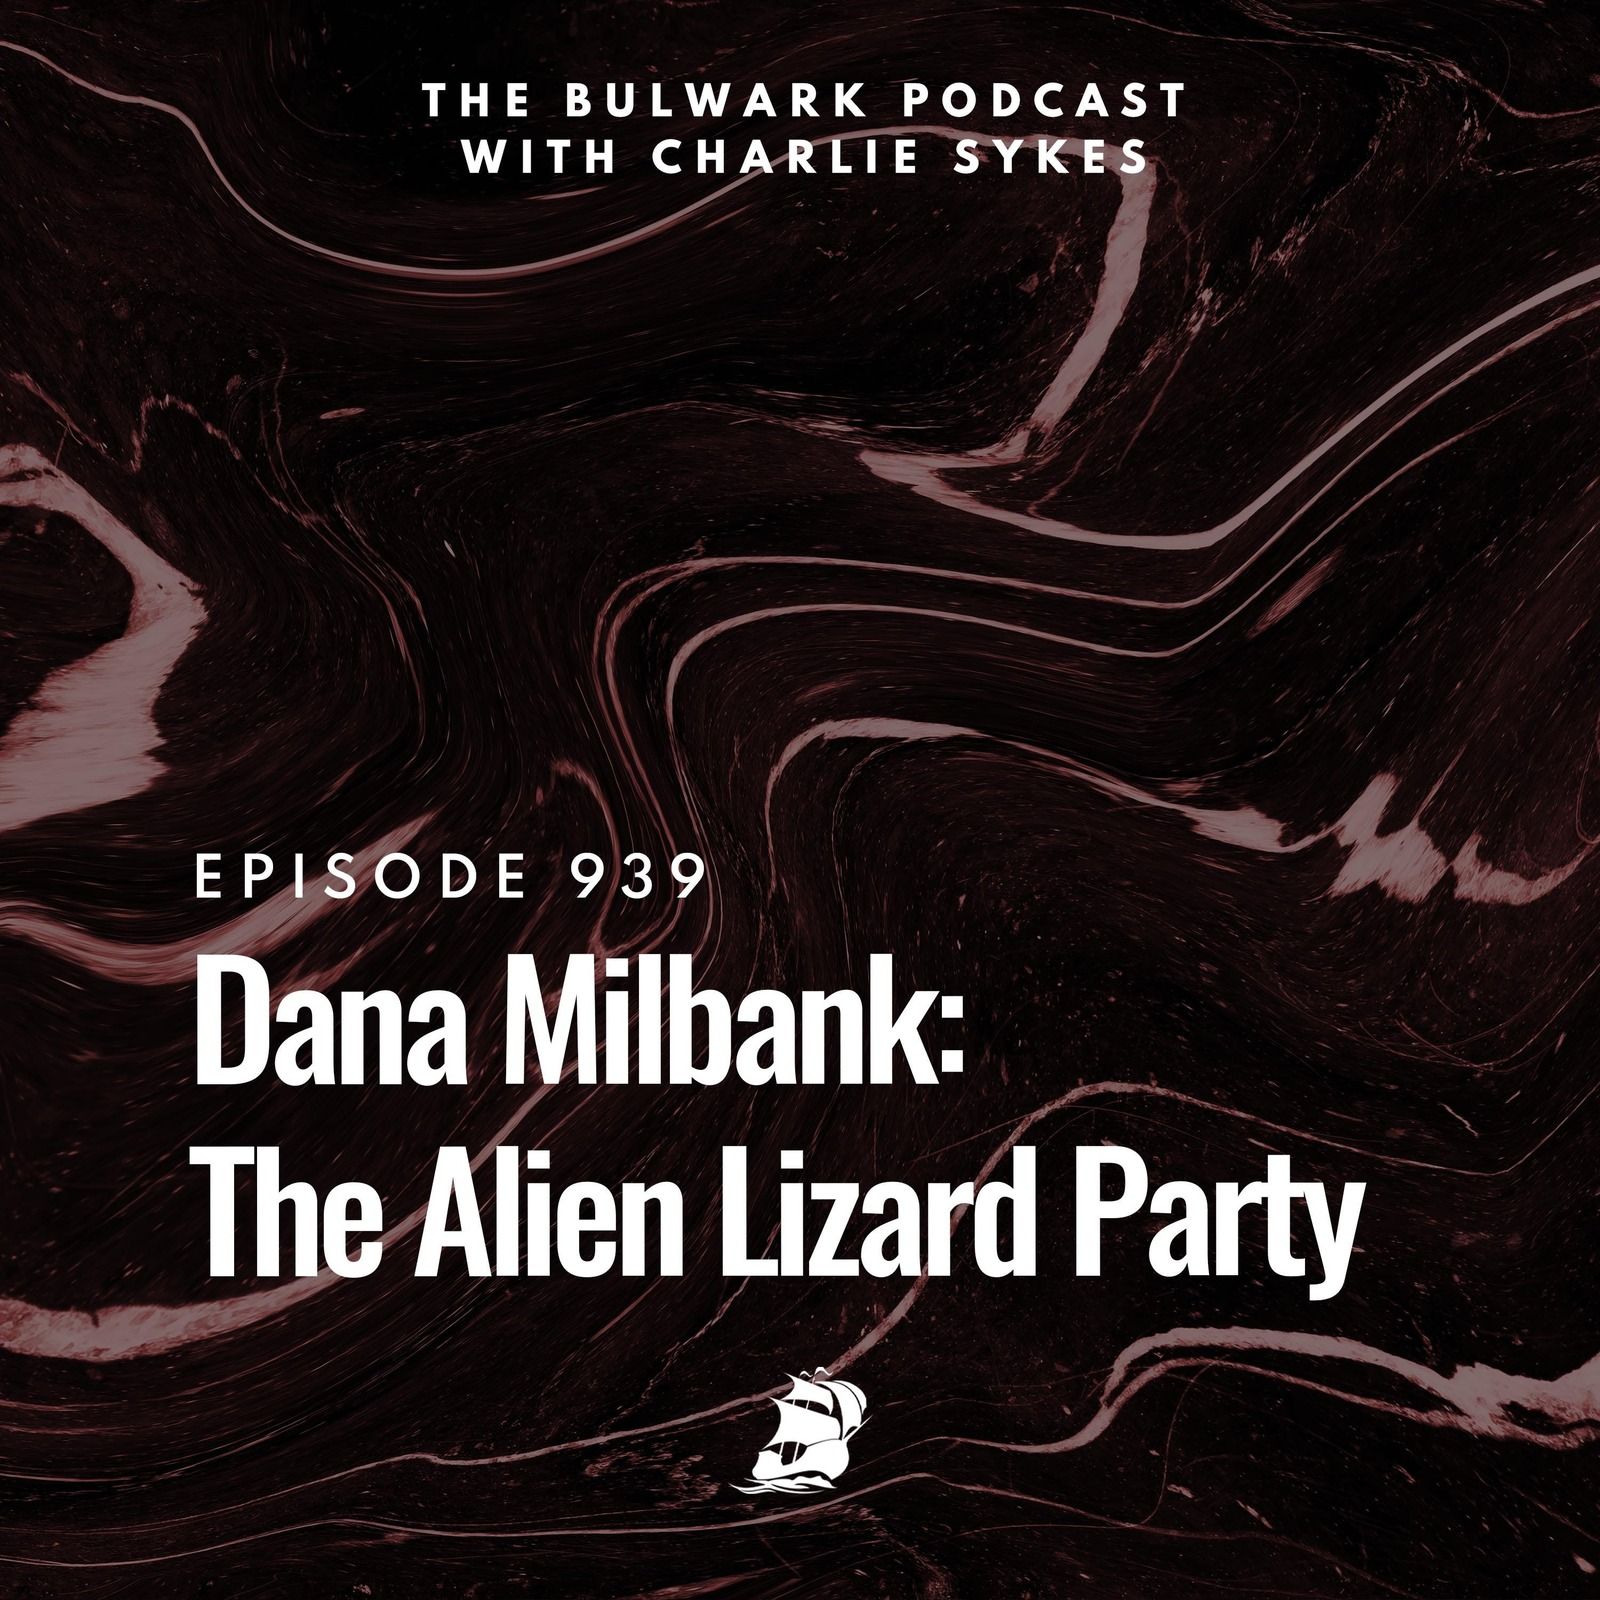 Dana Milbank: The Alien Lizard Party